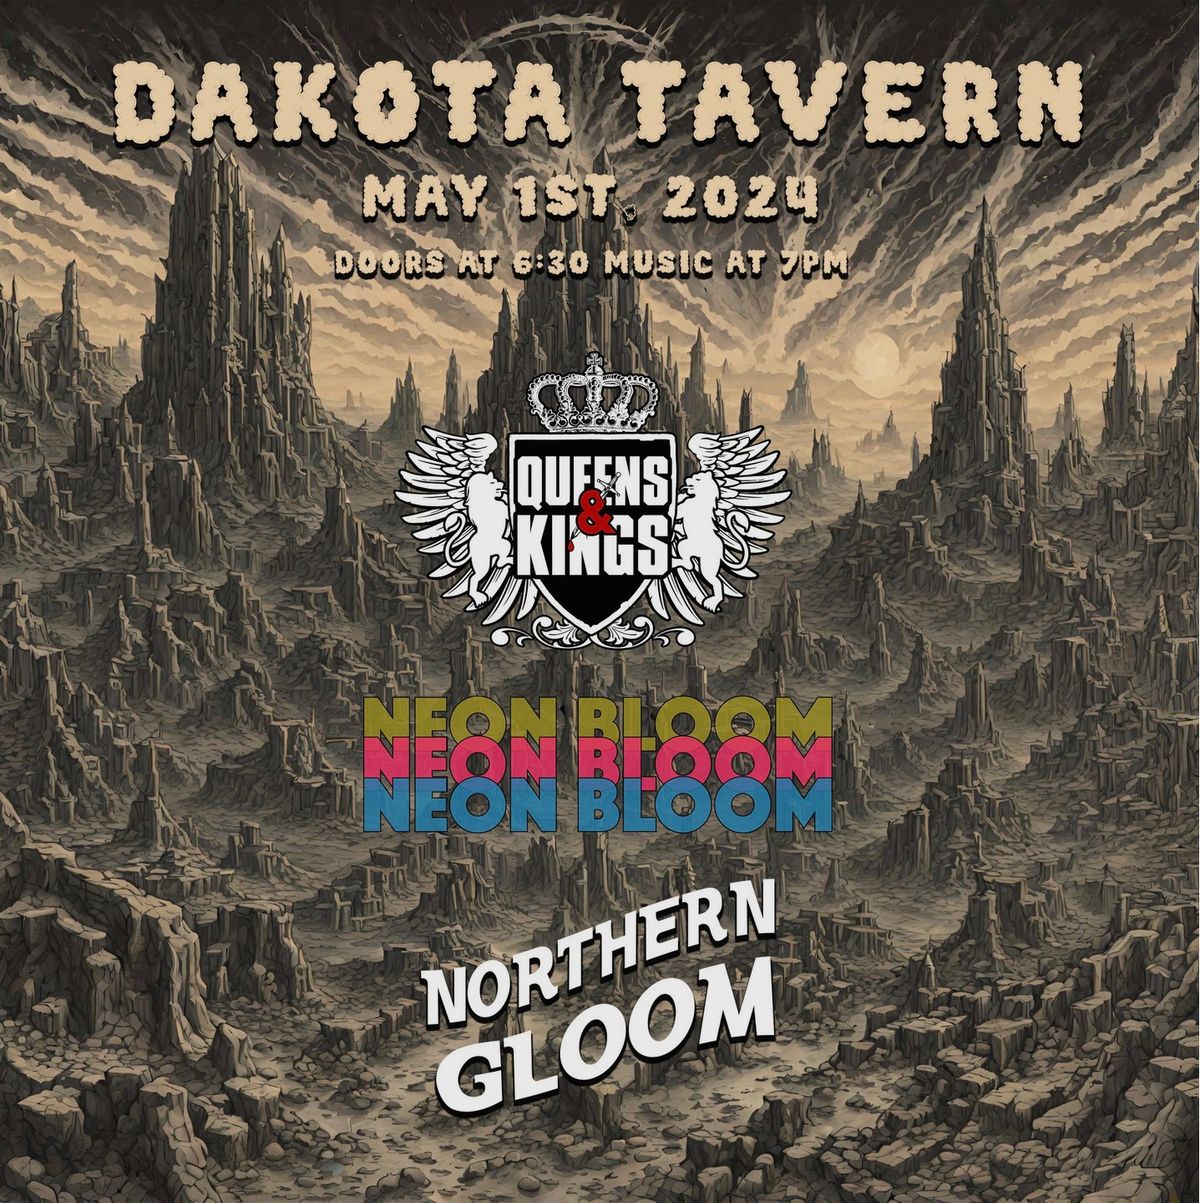 Northern Gloom \/\/ Queens & Kings \/\/ Neon Bloom @ The Dakota Tavern!